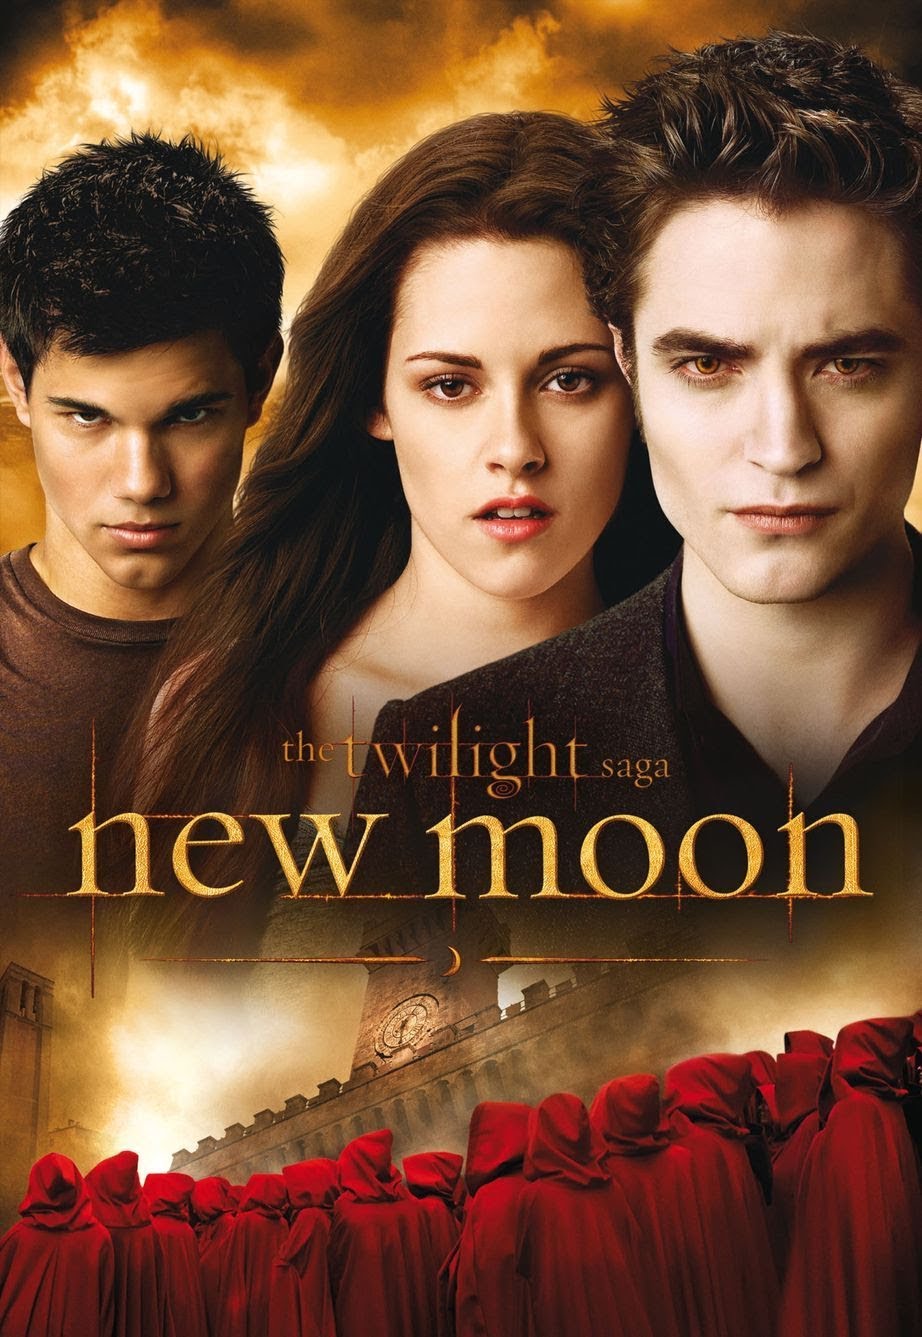 The Twilight Saga: New Moon [HD] (2009)